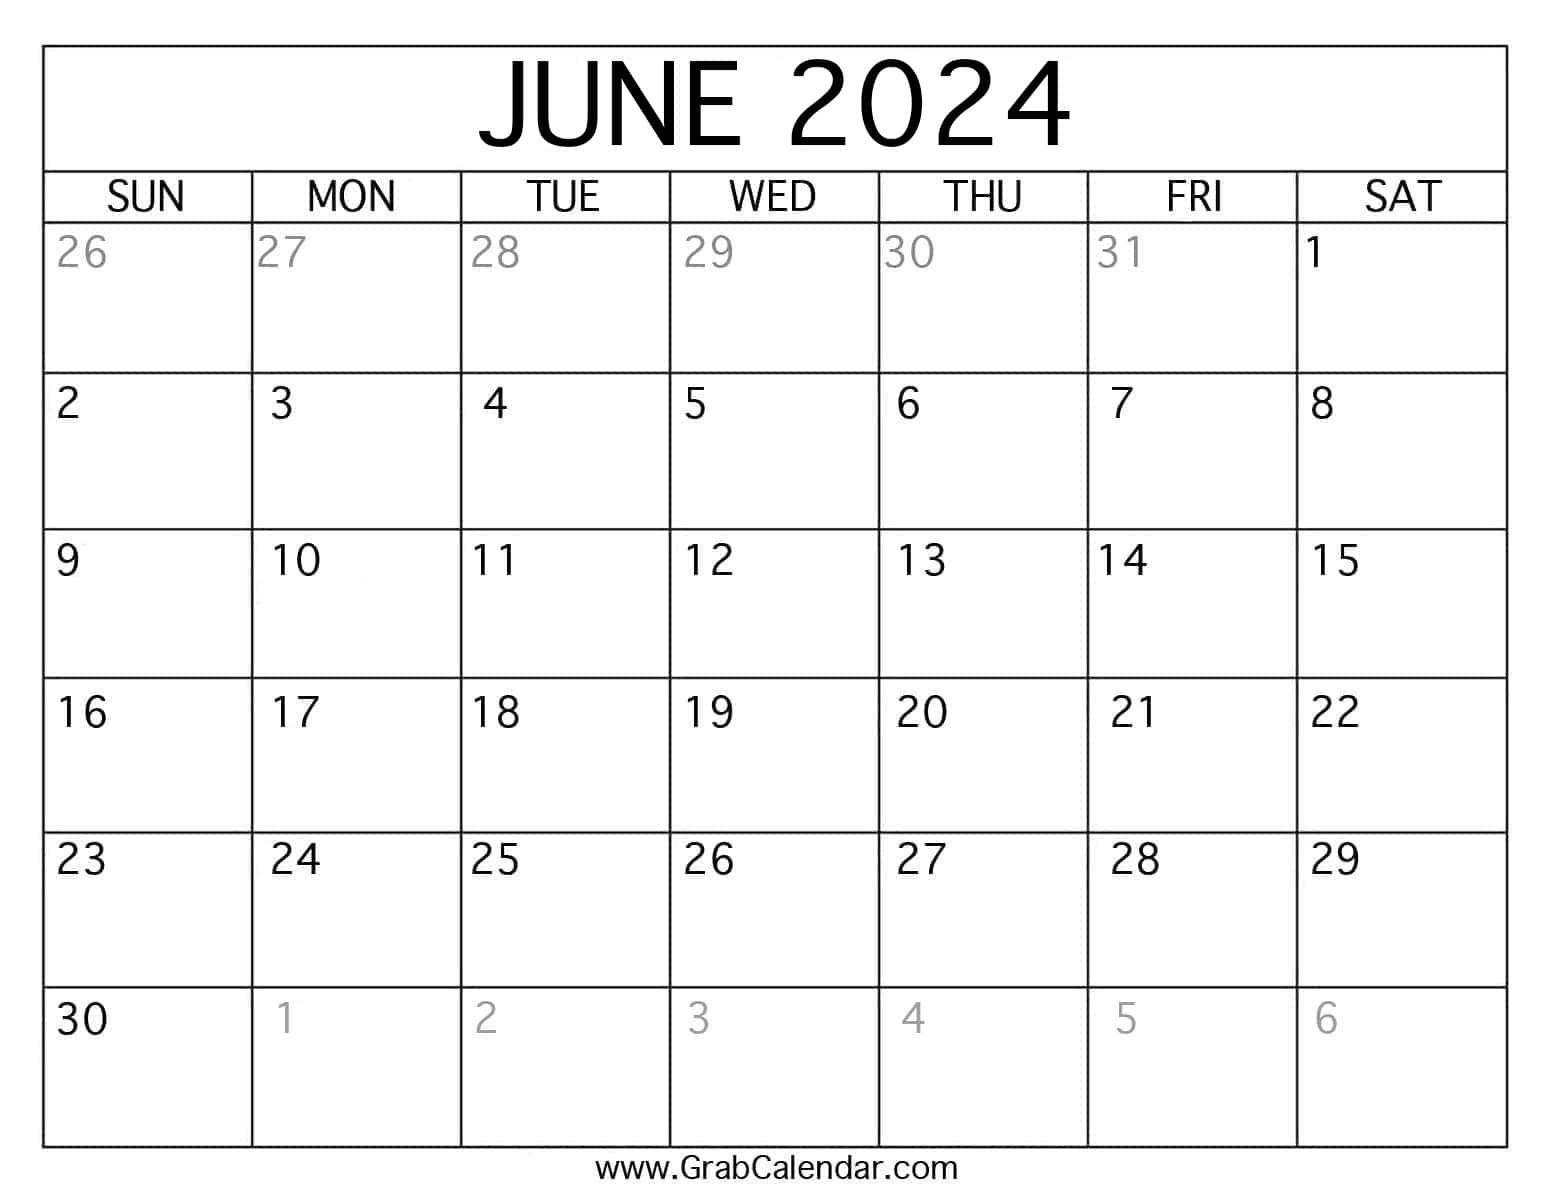 Printable June 2024 Calendar intended for Show Me The June Calendar 2024